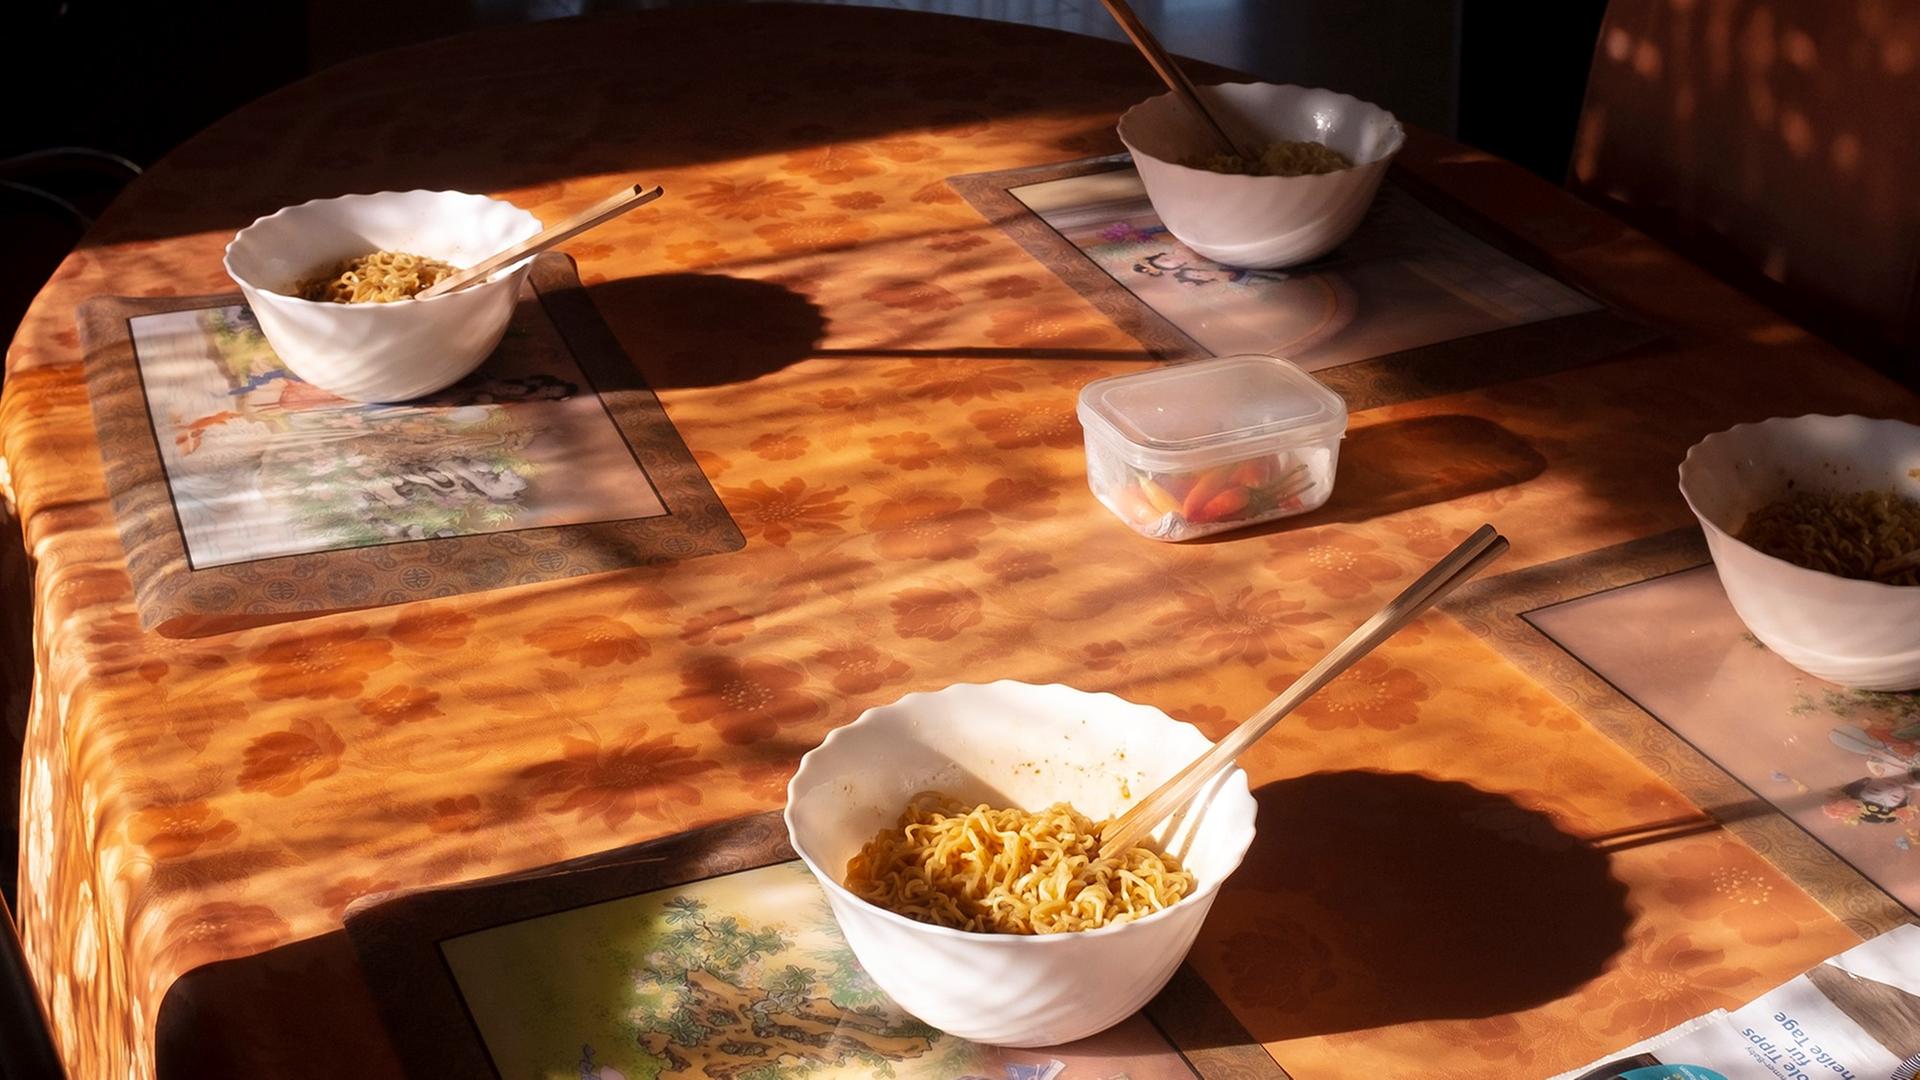 Eine Fotografie von Mika Sperling mit dem Titel "Lunch" zeigt in einer Wohnung einen Esstisch aus hellem Holz, auf dem zwei Schalen mit asiatischen Nudeln angerichtet sind.